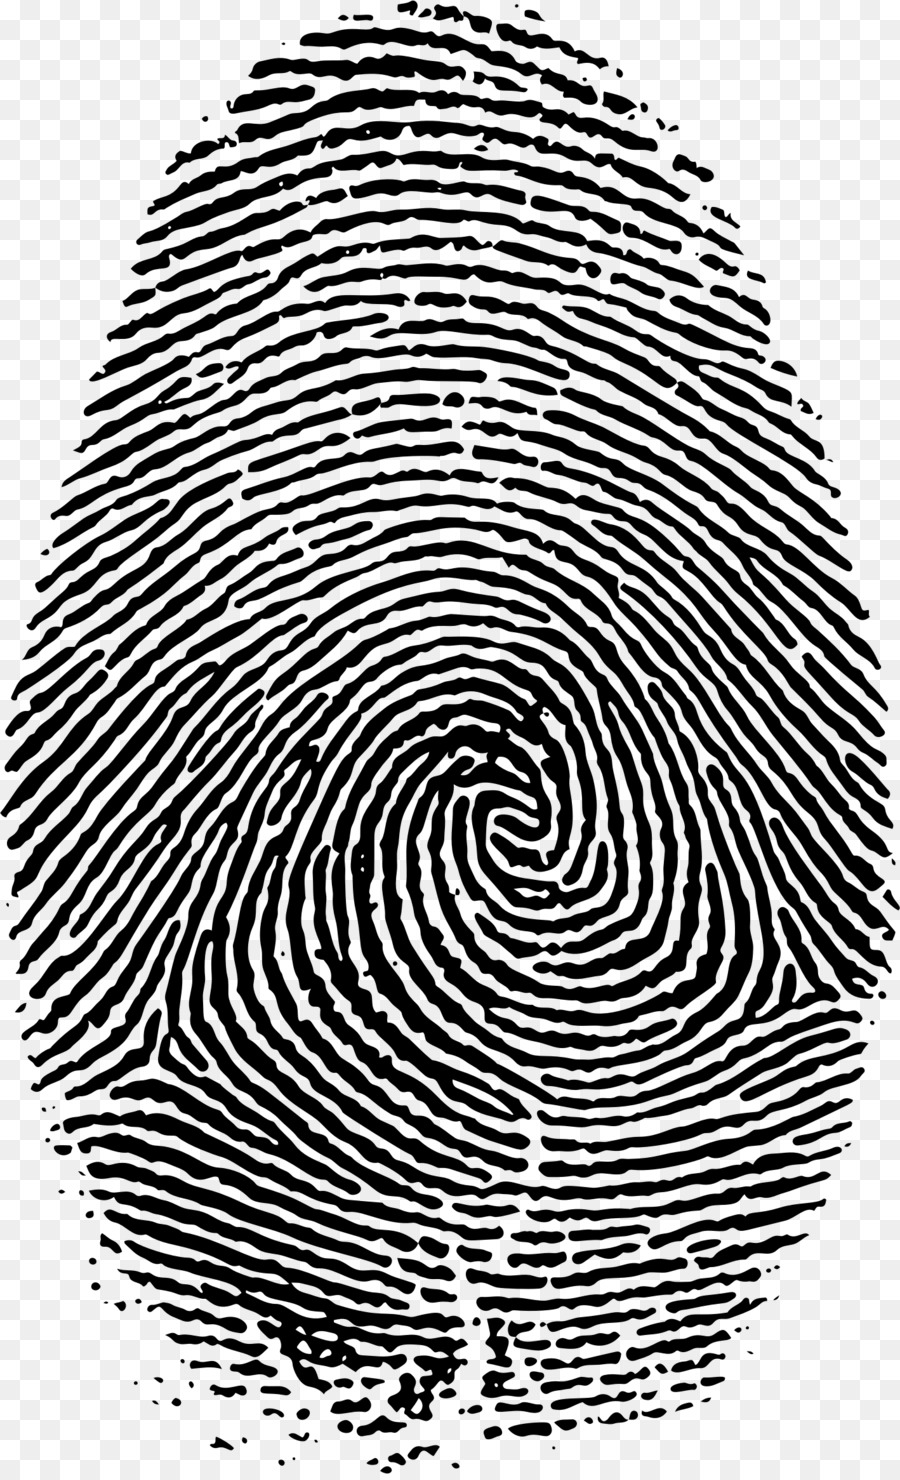 Fingerprint Live scan - big png download - 1418*2322 - Free Transparent Fingerprint png Download.